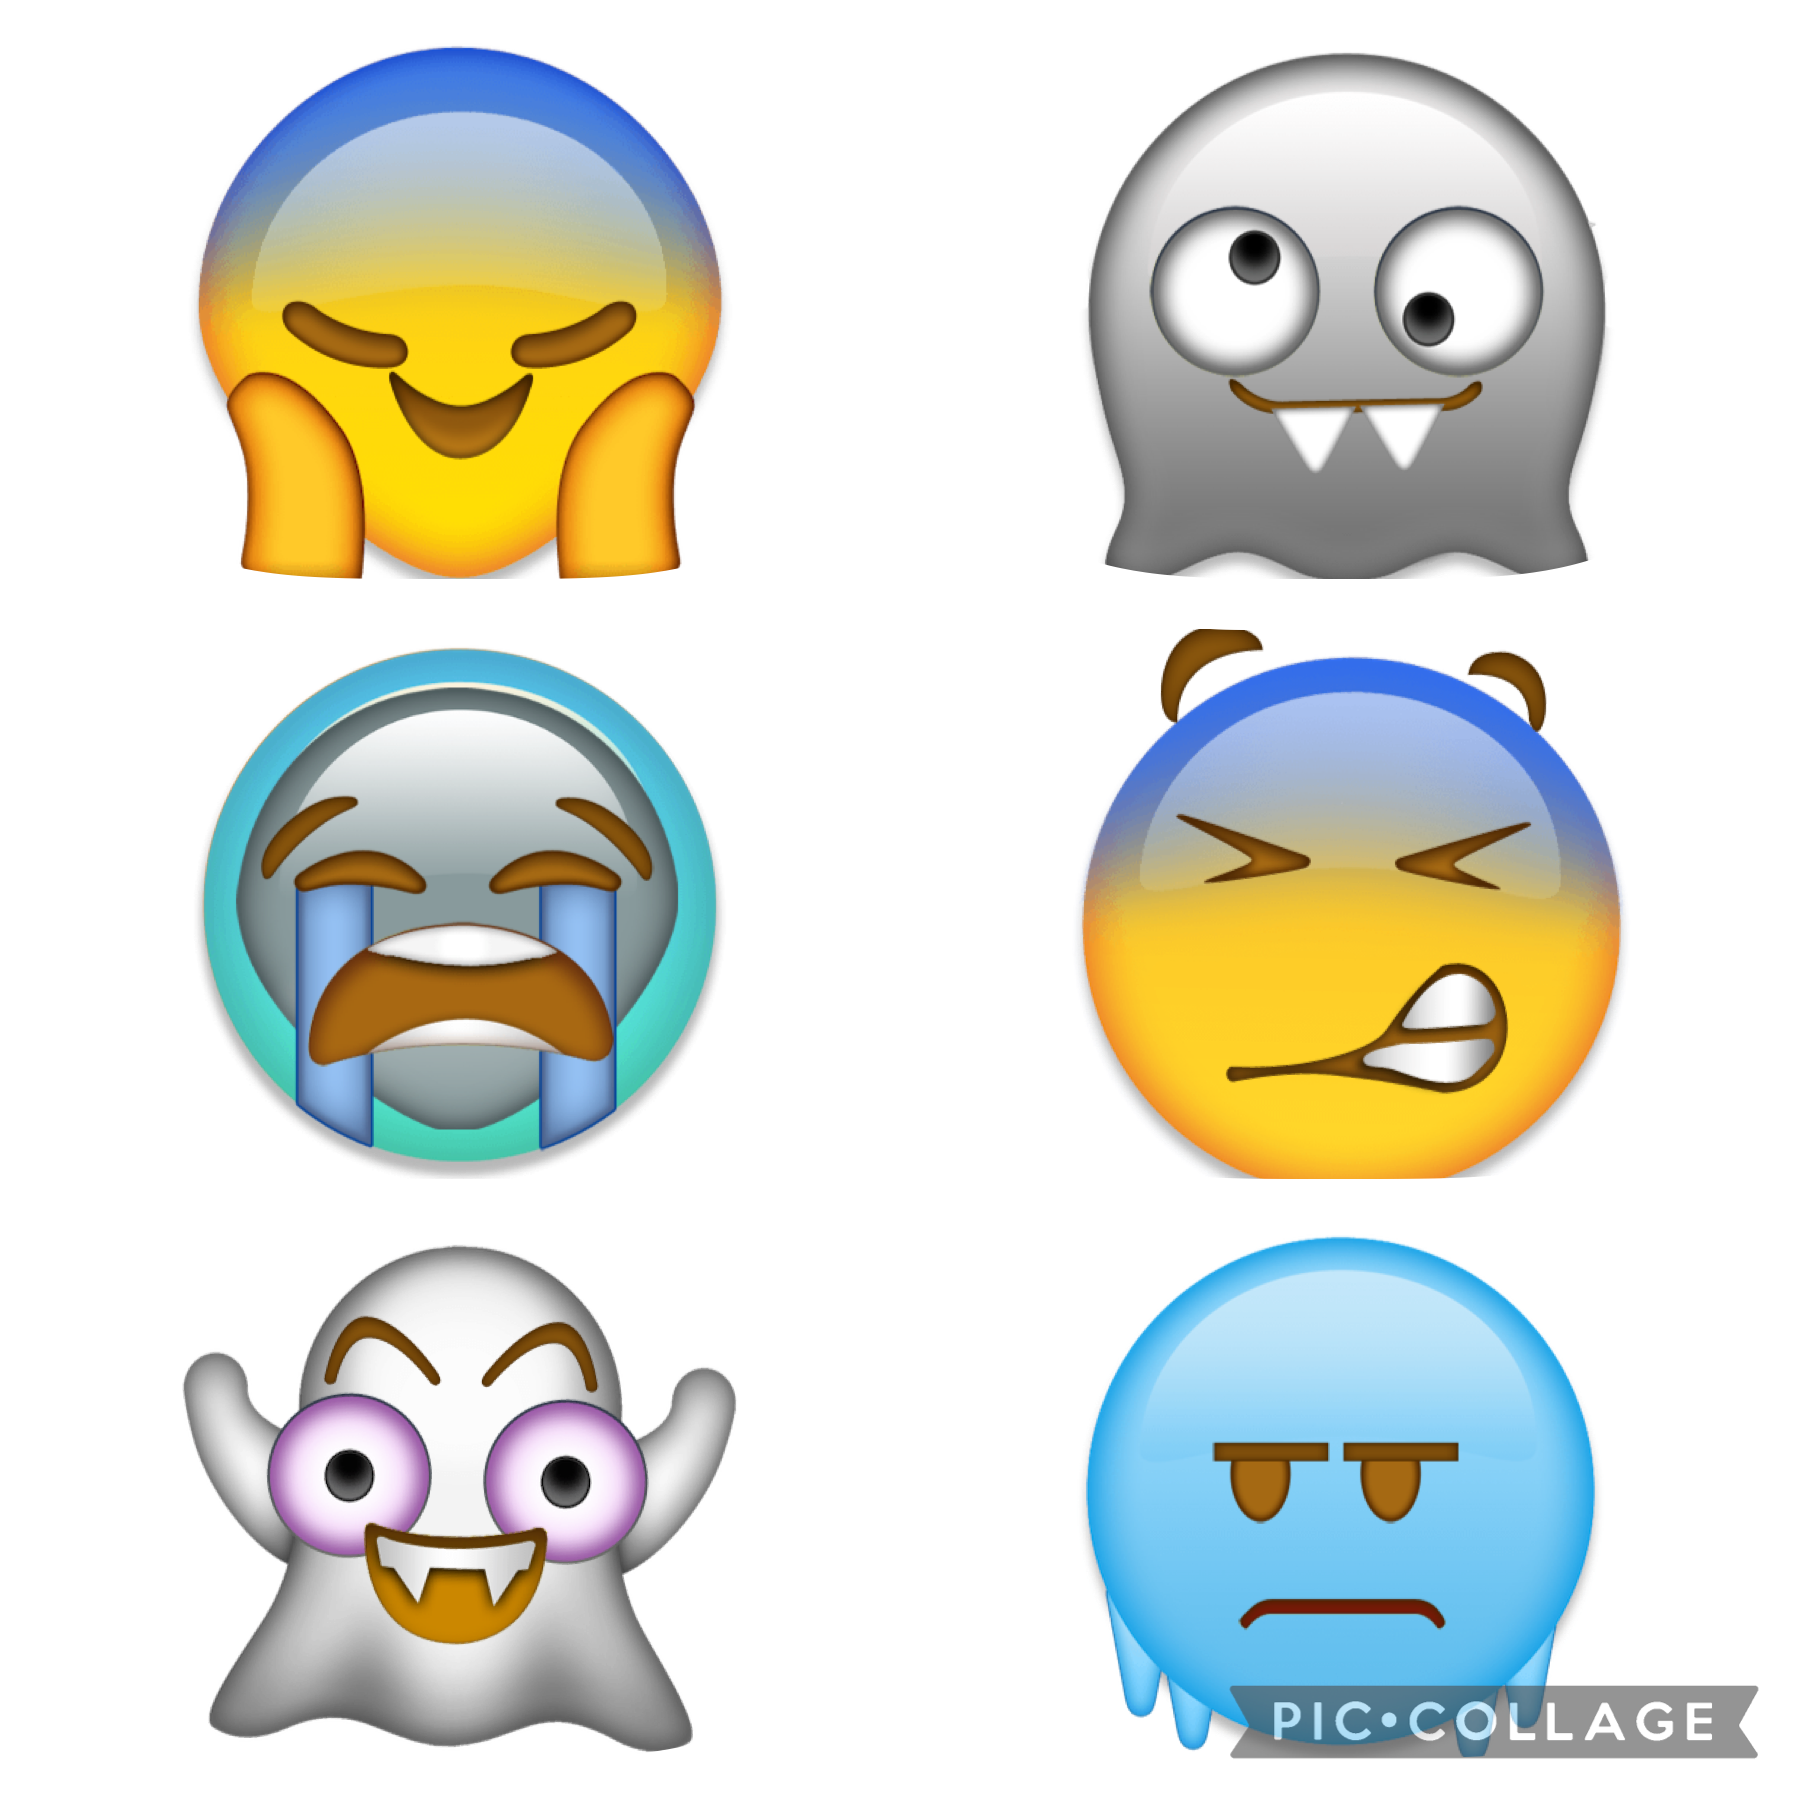 My own made emojis